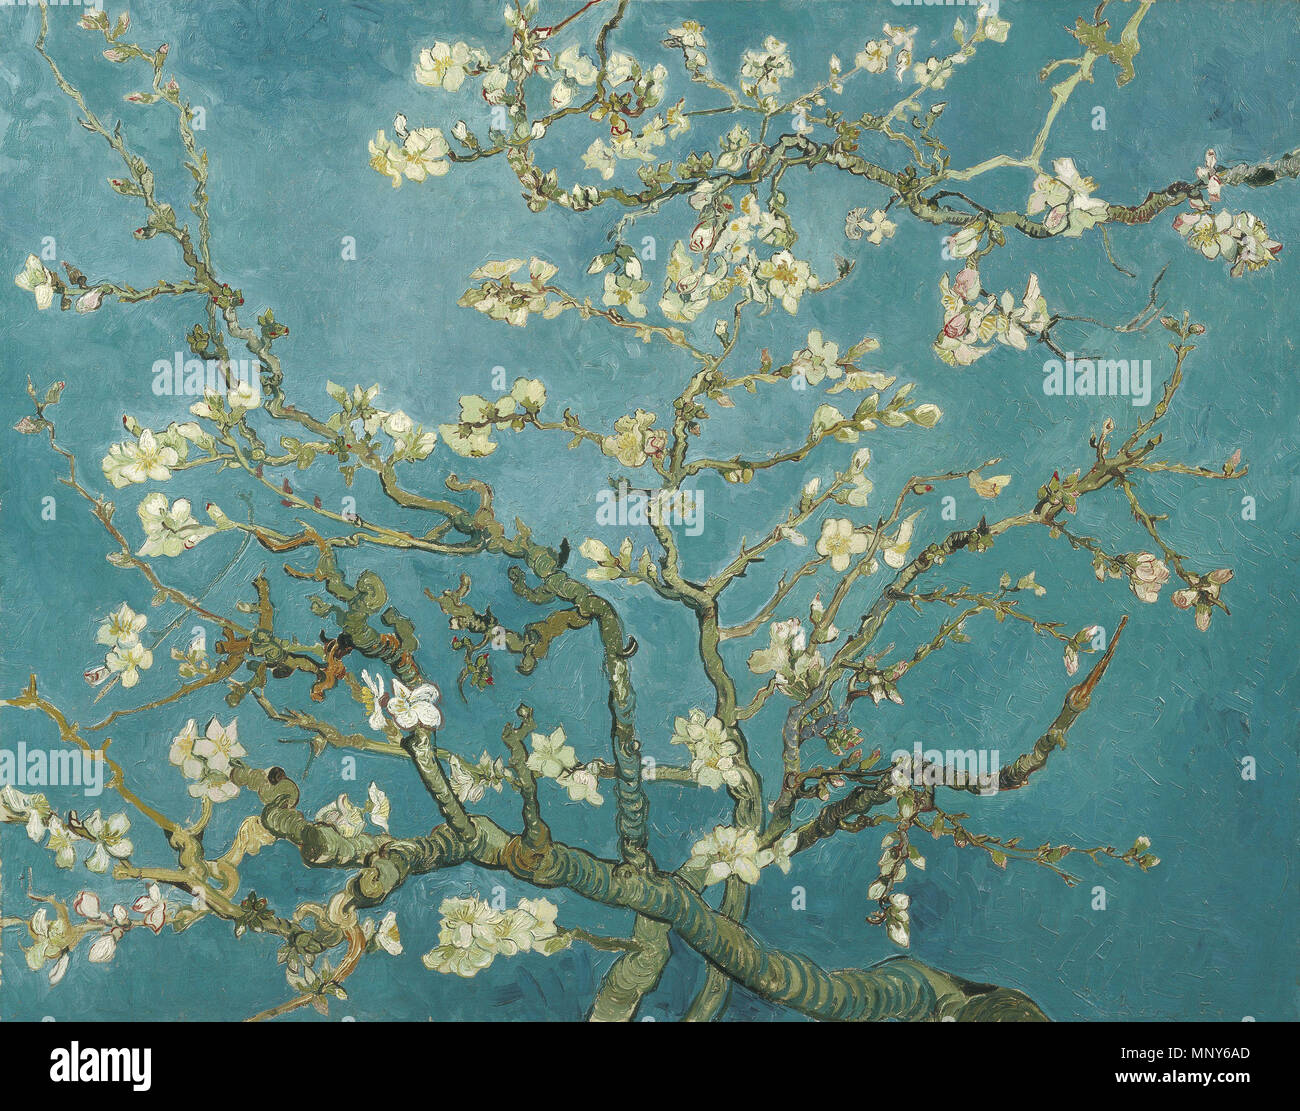 1890 Fleur d'amandier (commencé entre le 1er février et le 20 février, achevé avant le 29 avril). 1237 - Vincent van Gogh - Fleur d'amandier VGM F671 Banque D'Images